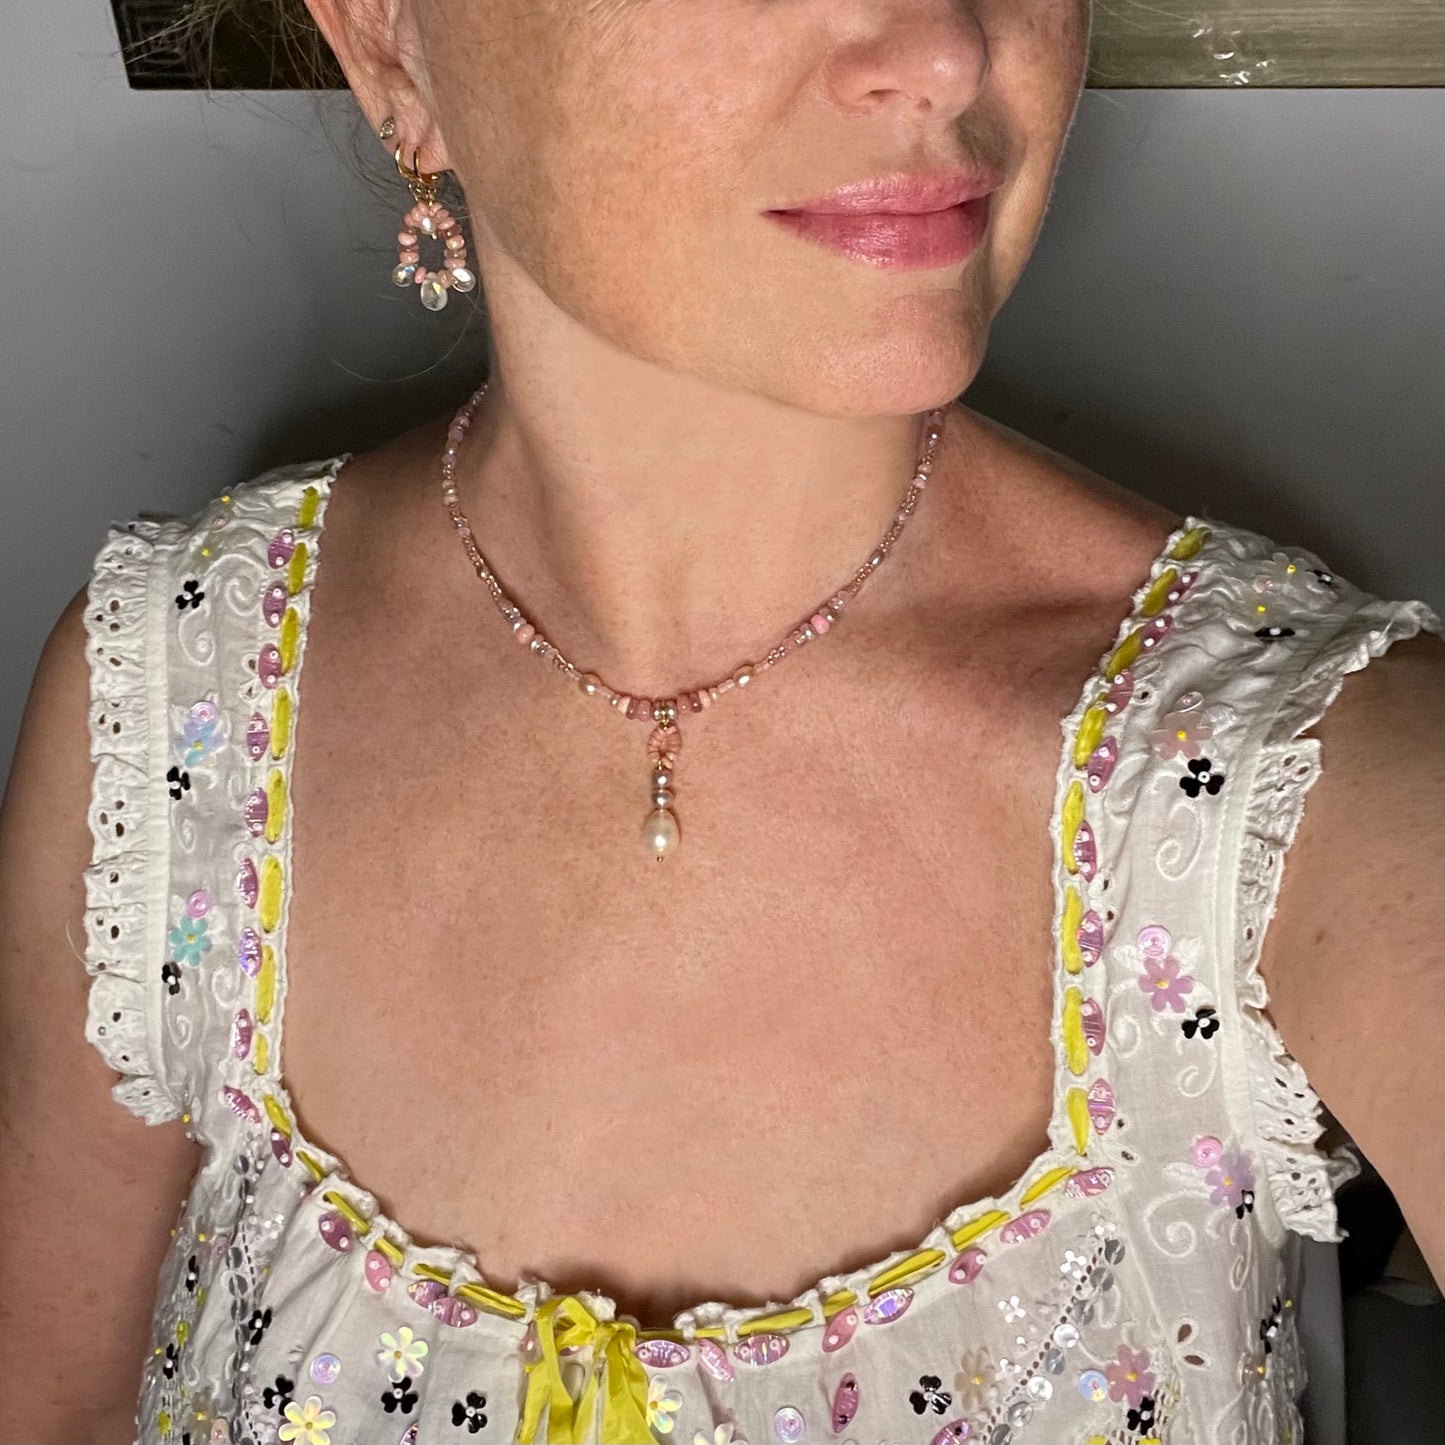 'Angel' Opal and Quartz Earrings